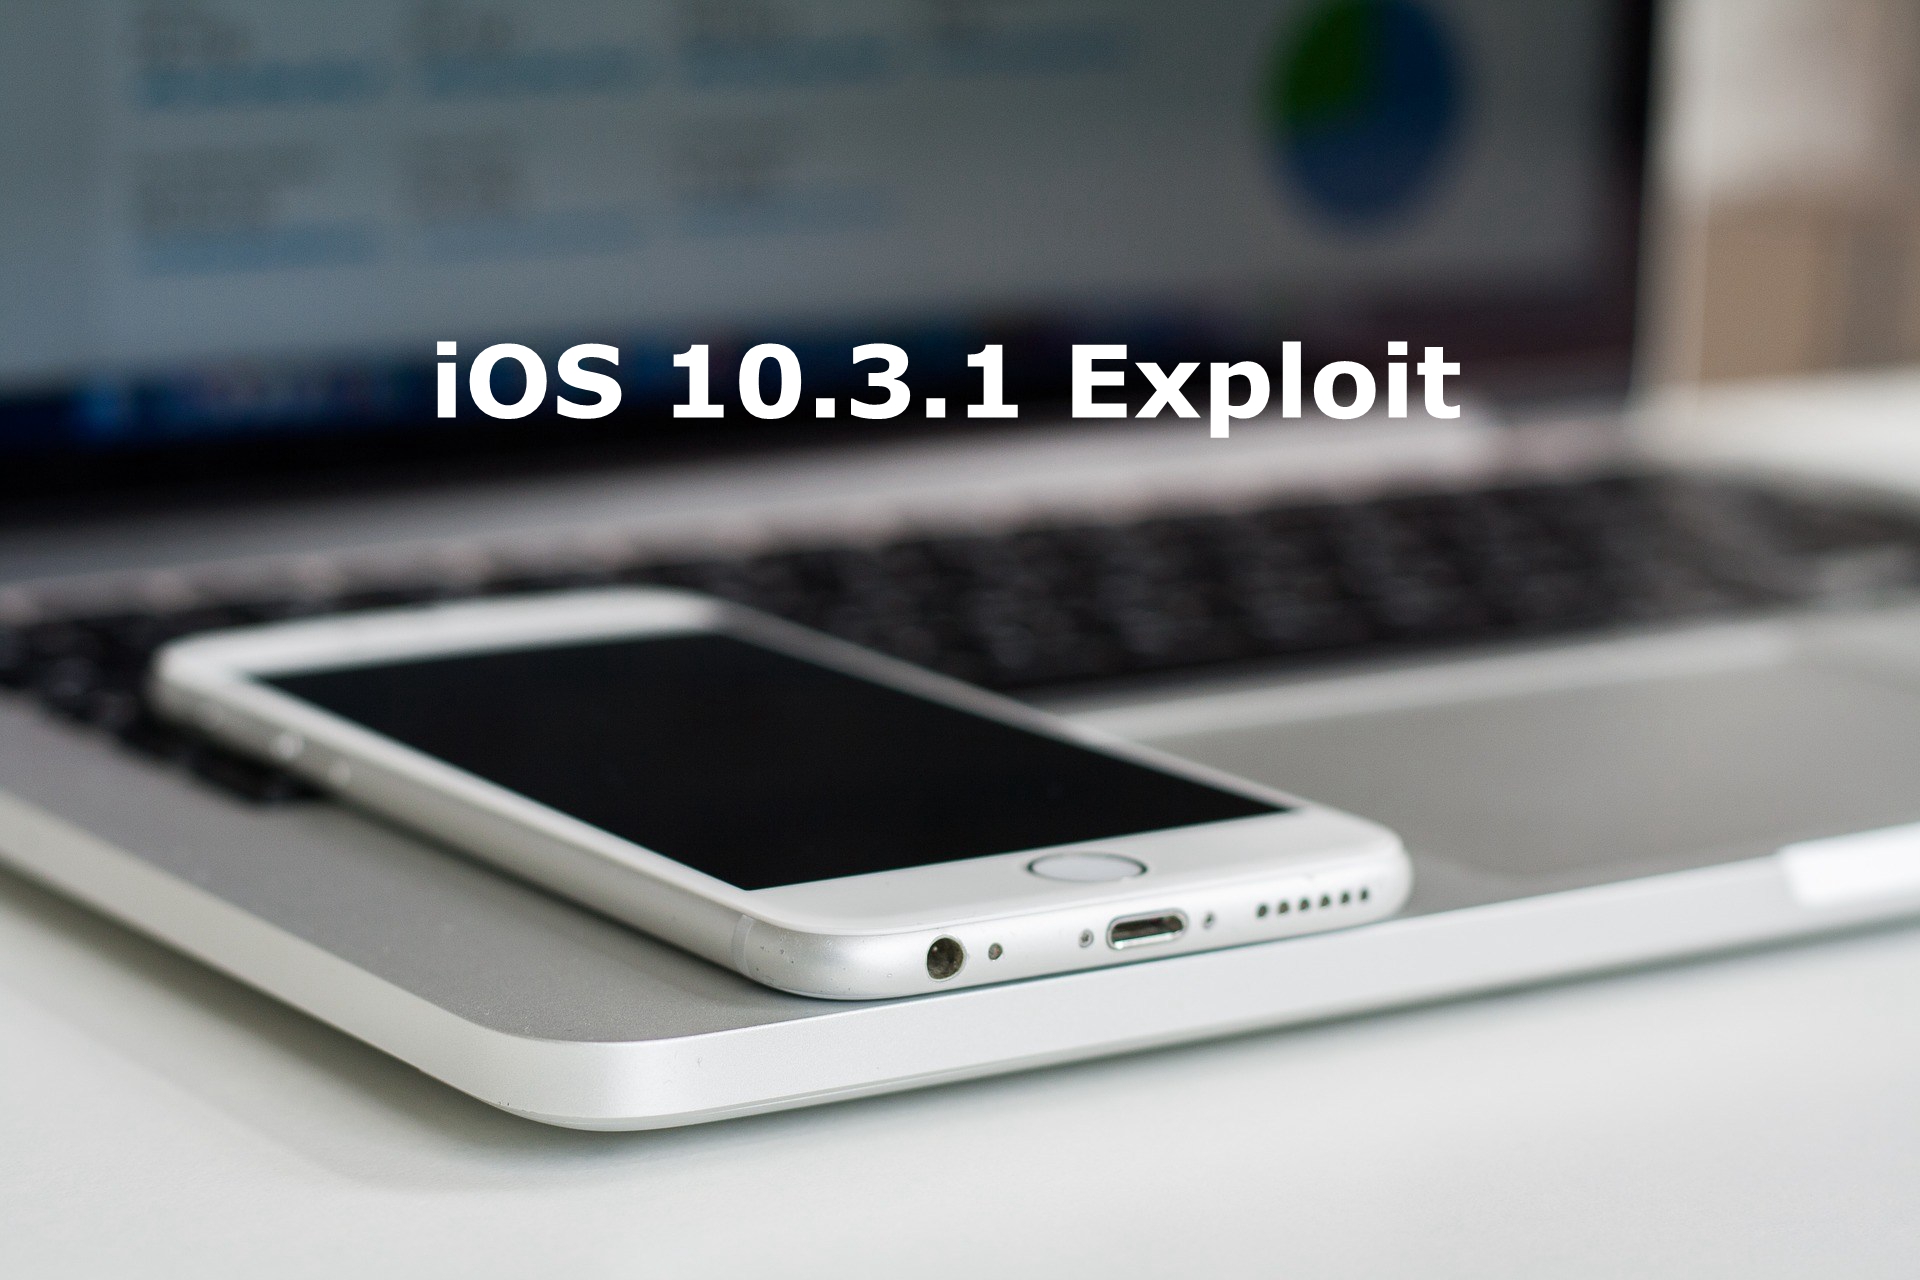  10.3.1 Exploit  May Allow iOS 10.2 Downgrade and Jailbreak 